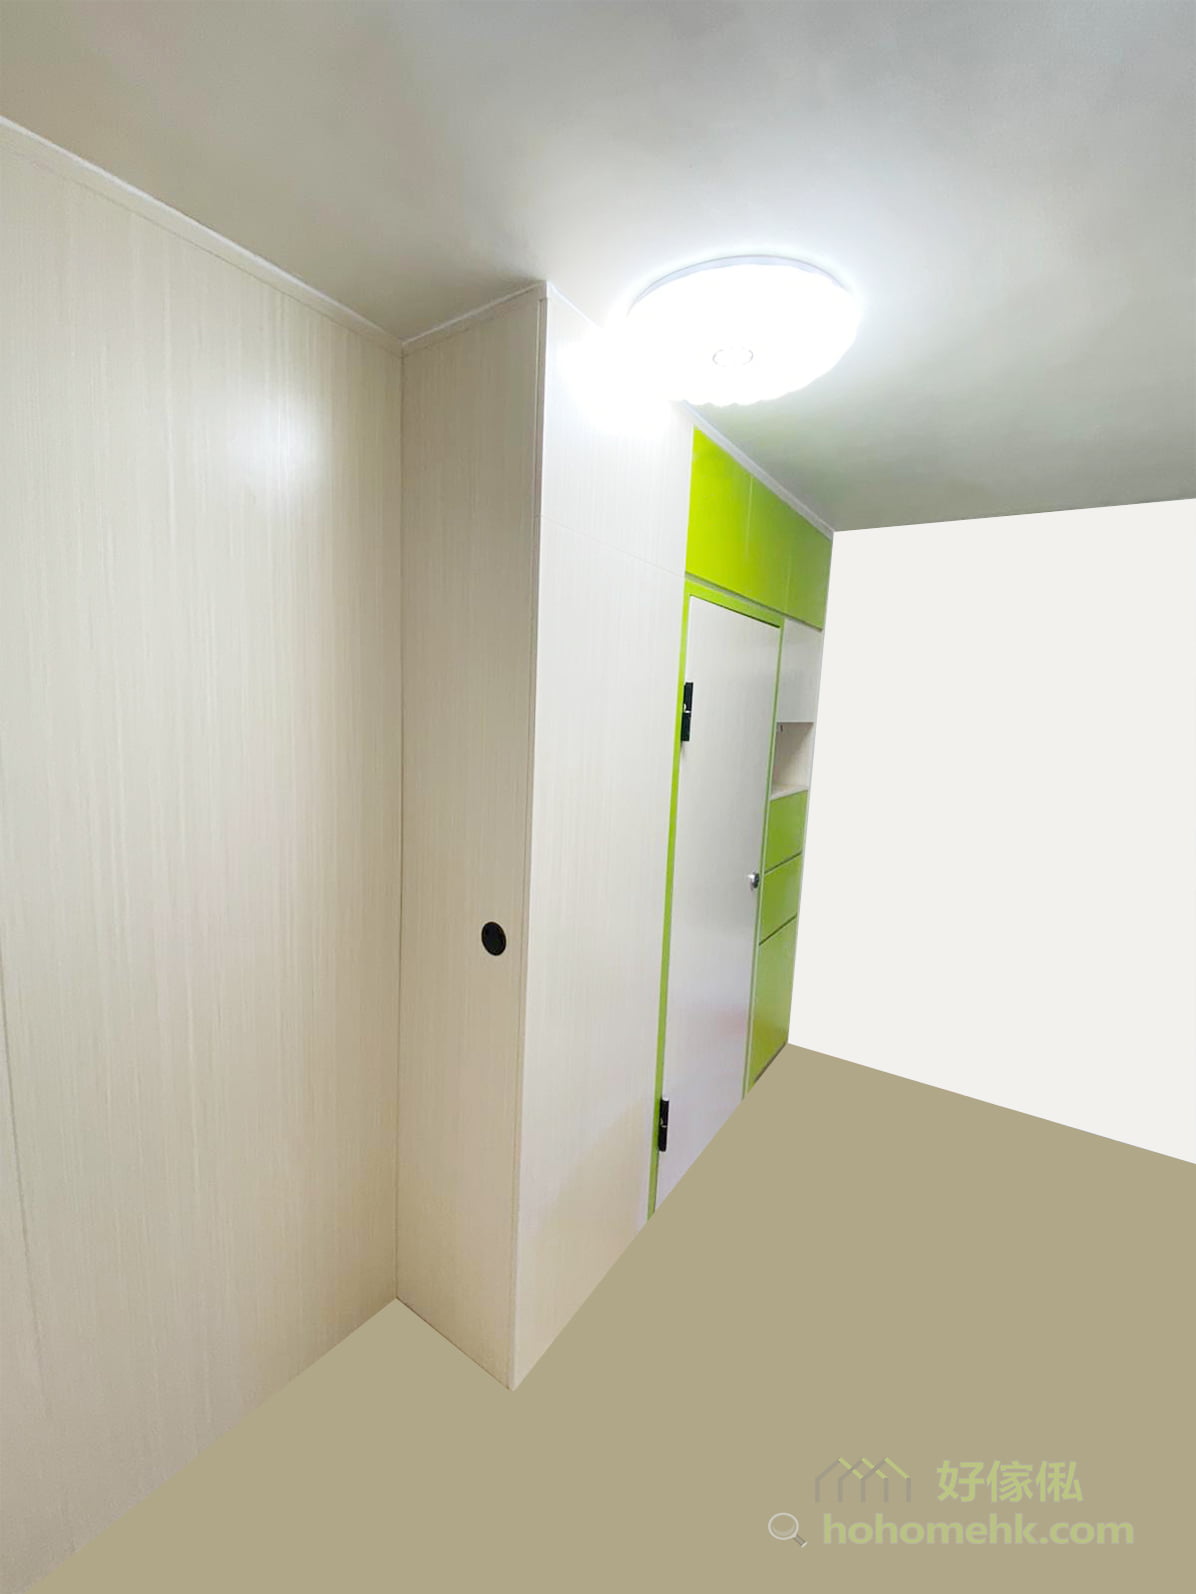 間房內的儲物櫃沿用螢光色的櫃門設計，安排在遠離睡床的位置，避免休息時會被過於鮮艷的顏色刺激眼睛，休息區主要用上柔和的米白色作為主調